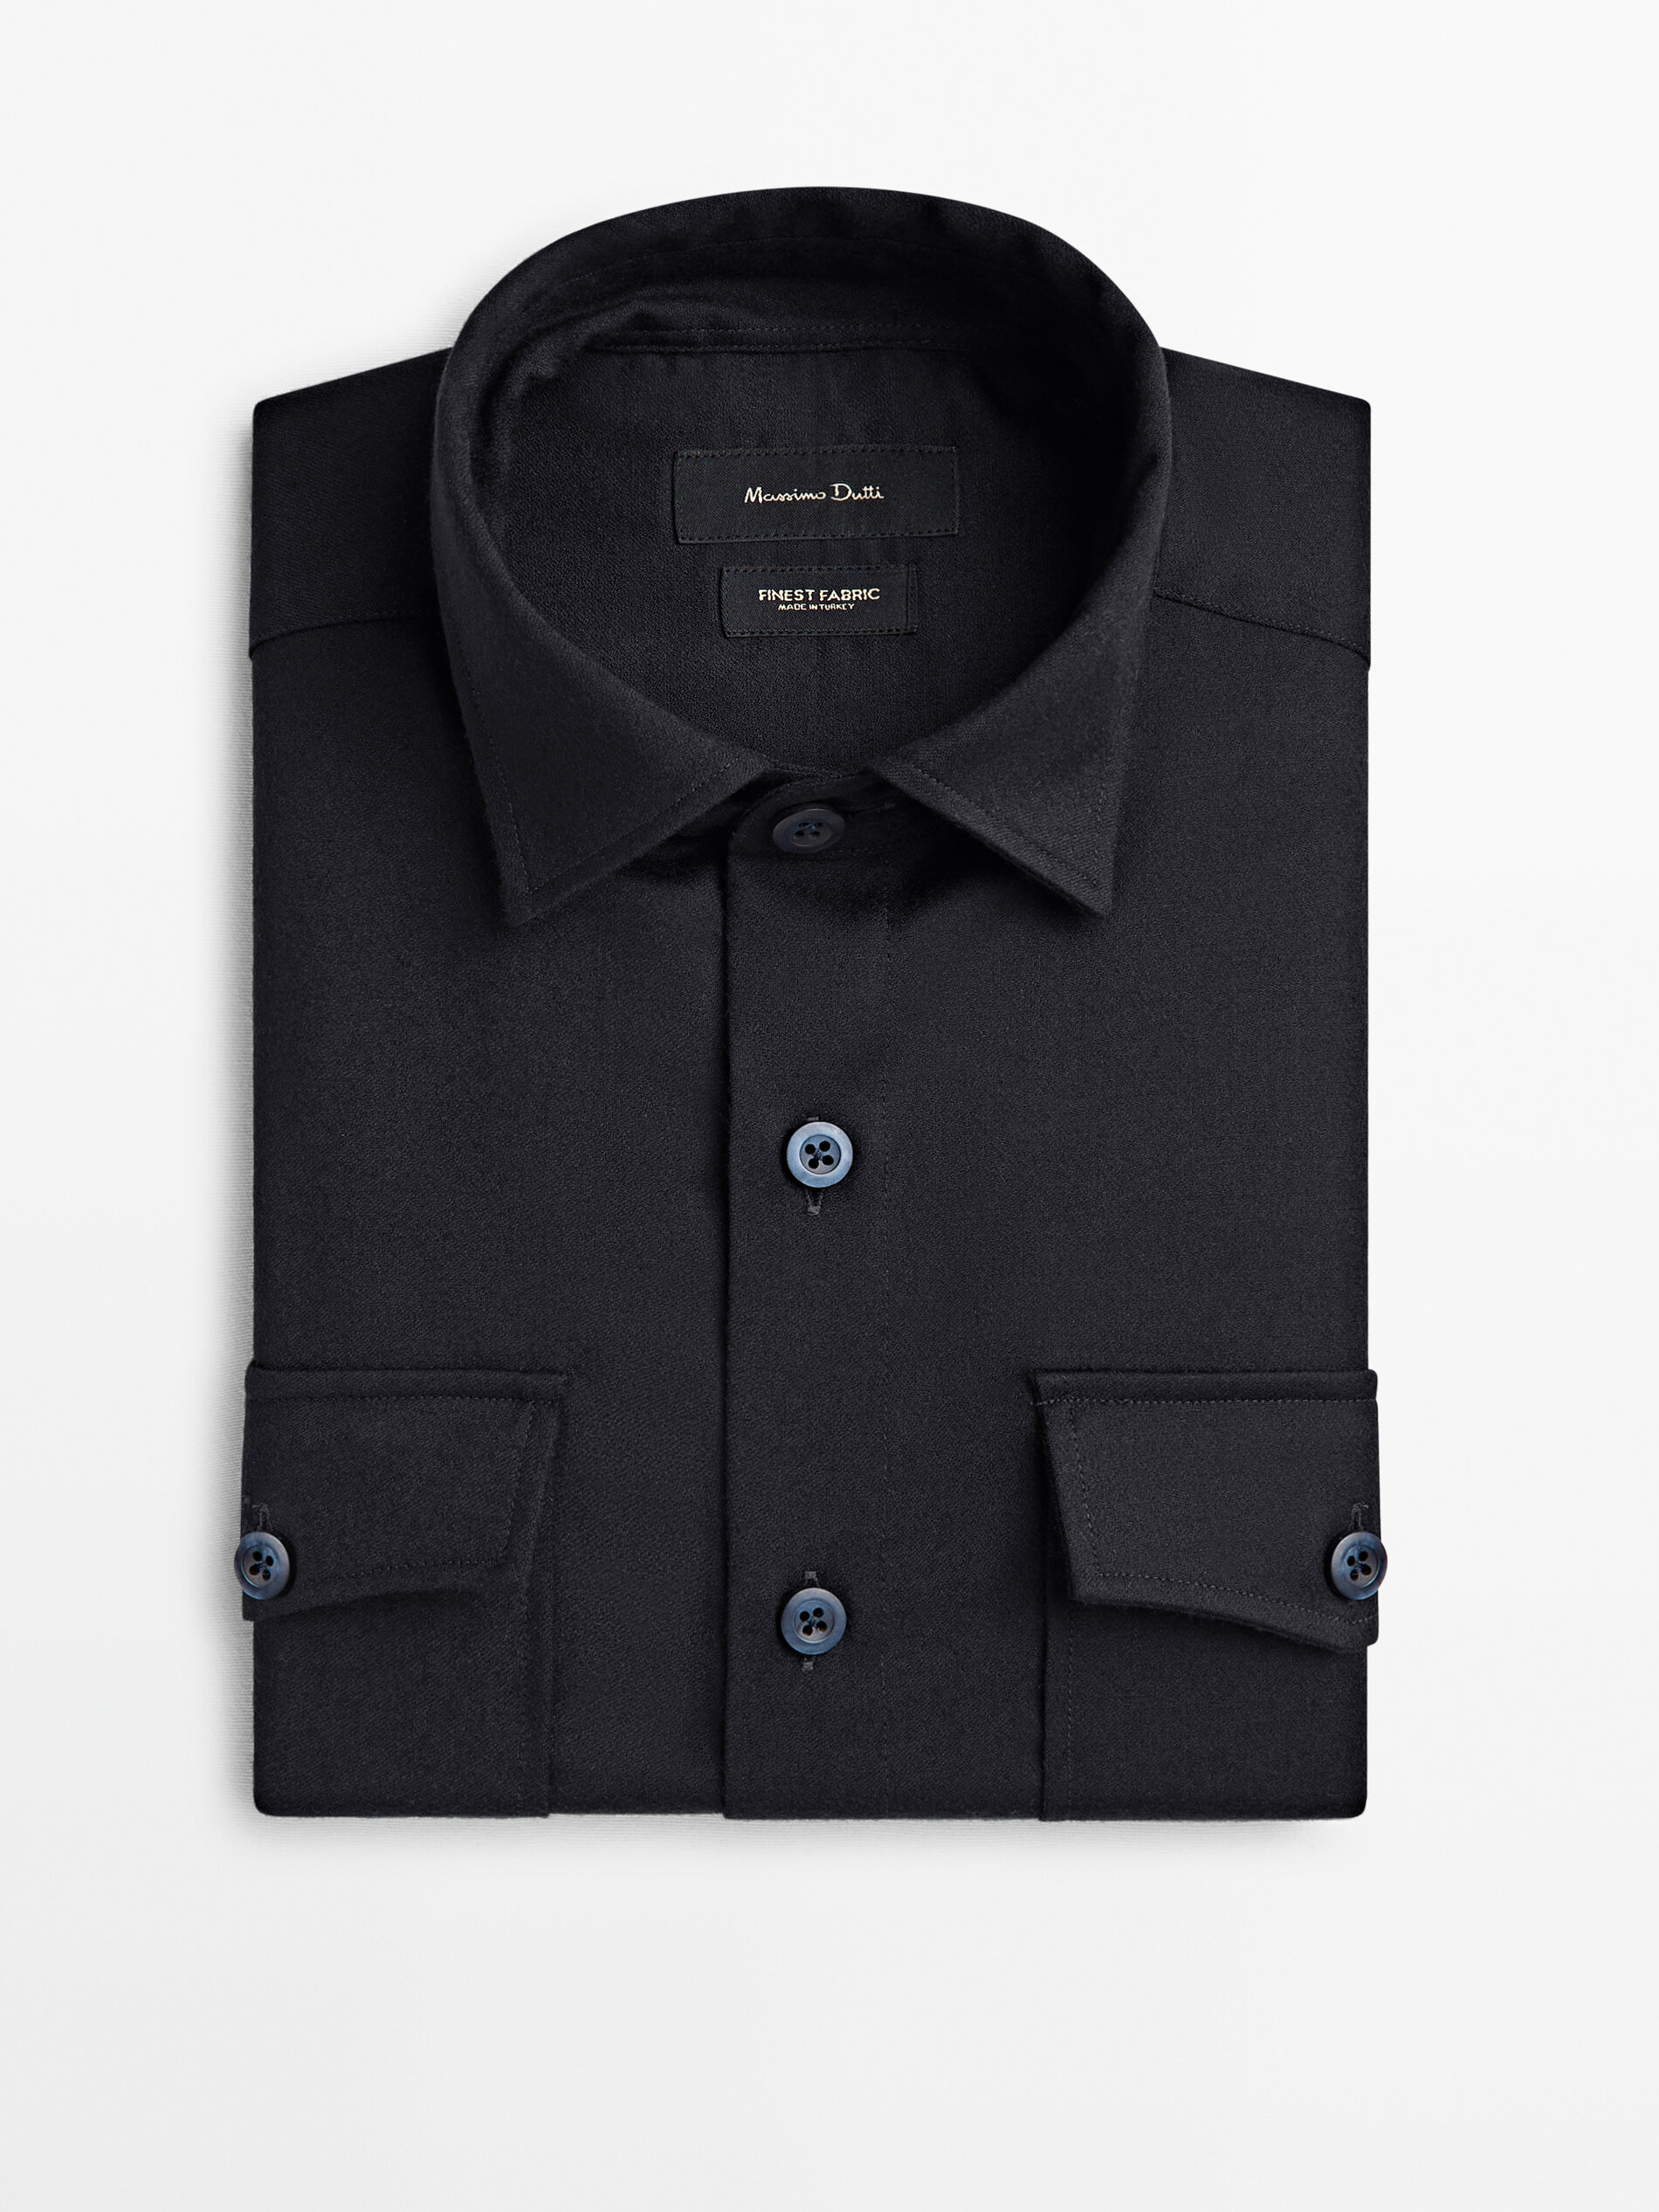 Camisa rayas lana merino slim fit · Azul Marino · Camisas